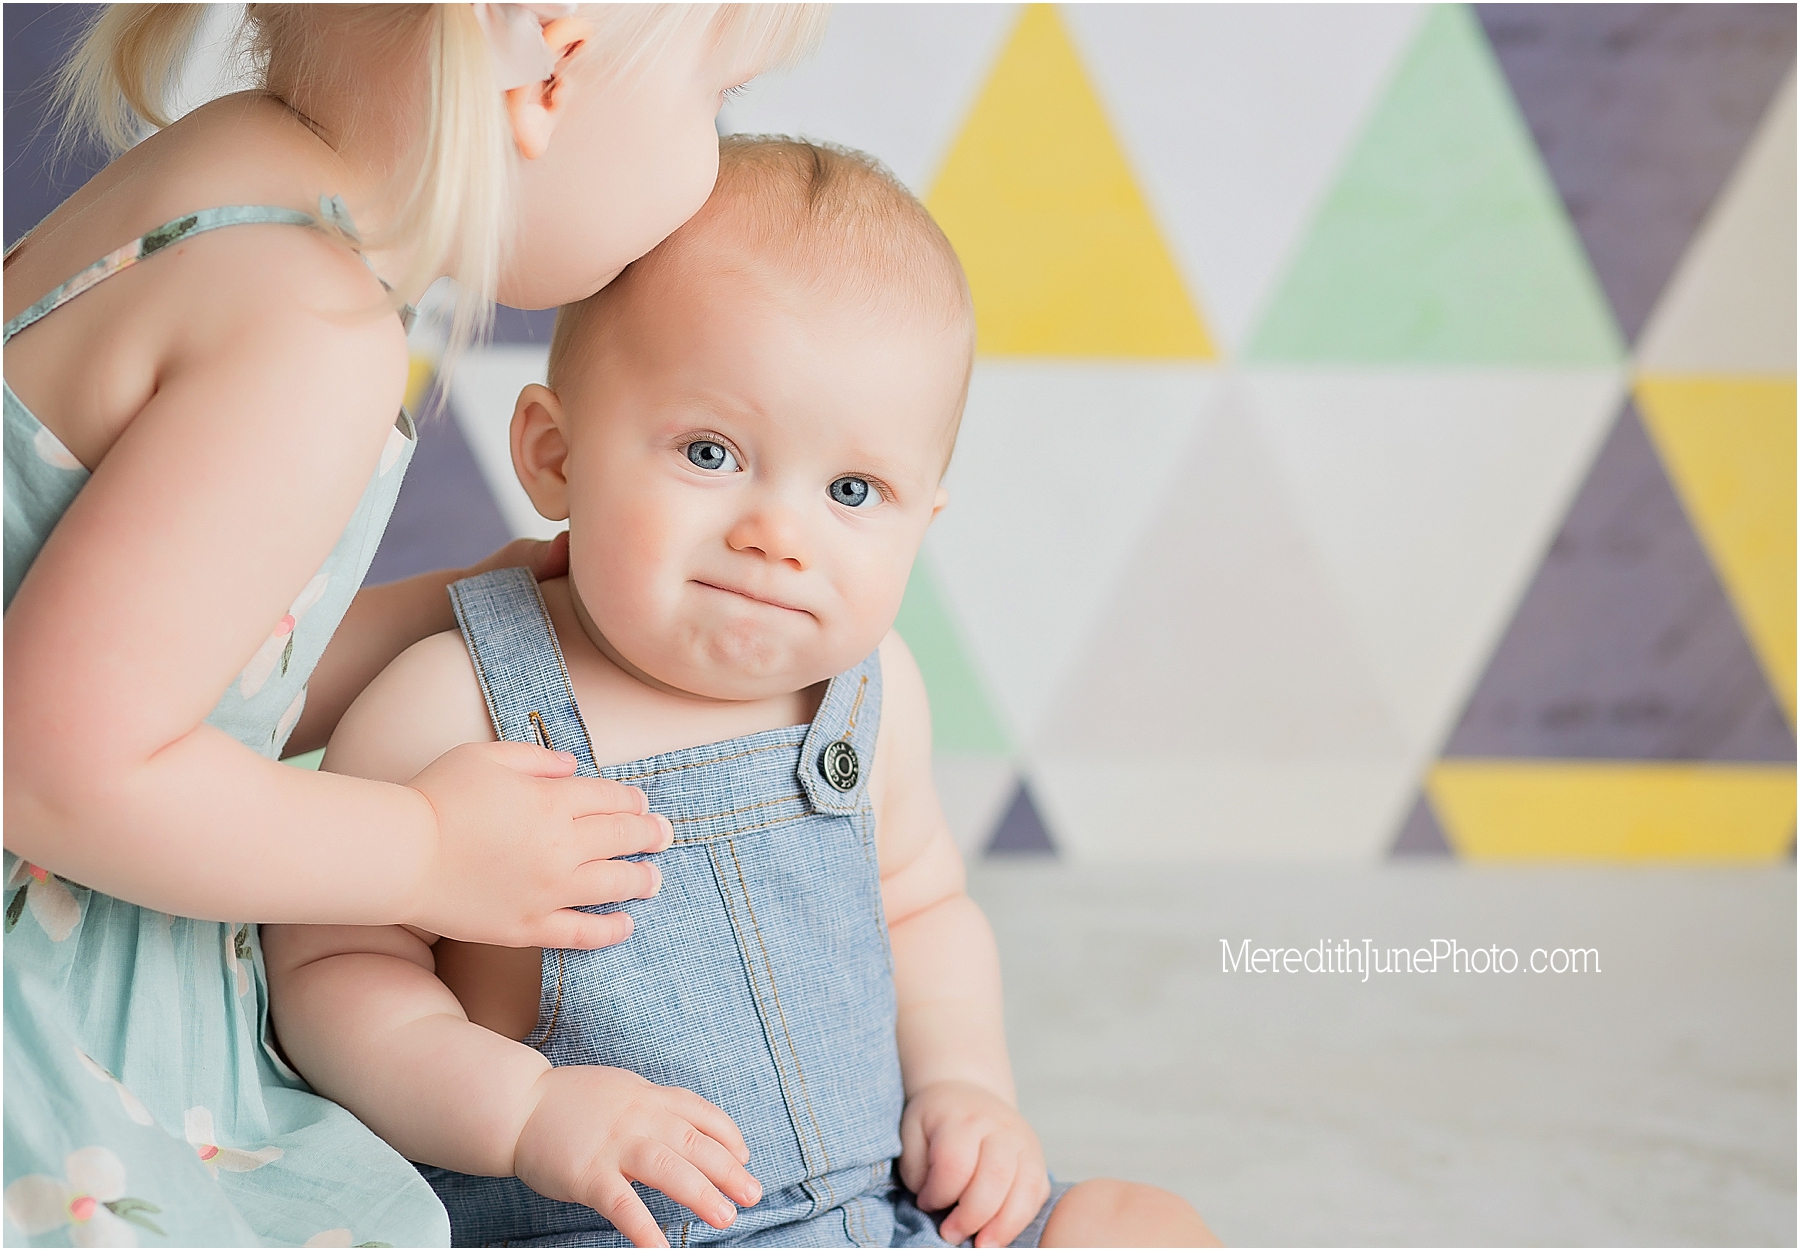 Baby Elijah at Meredith June Photography